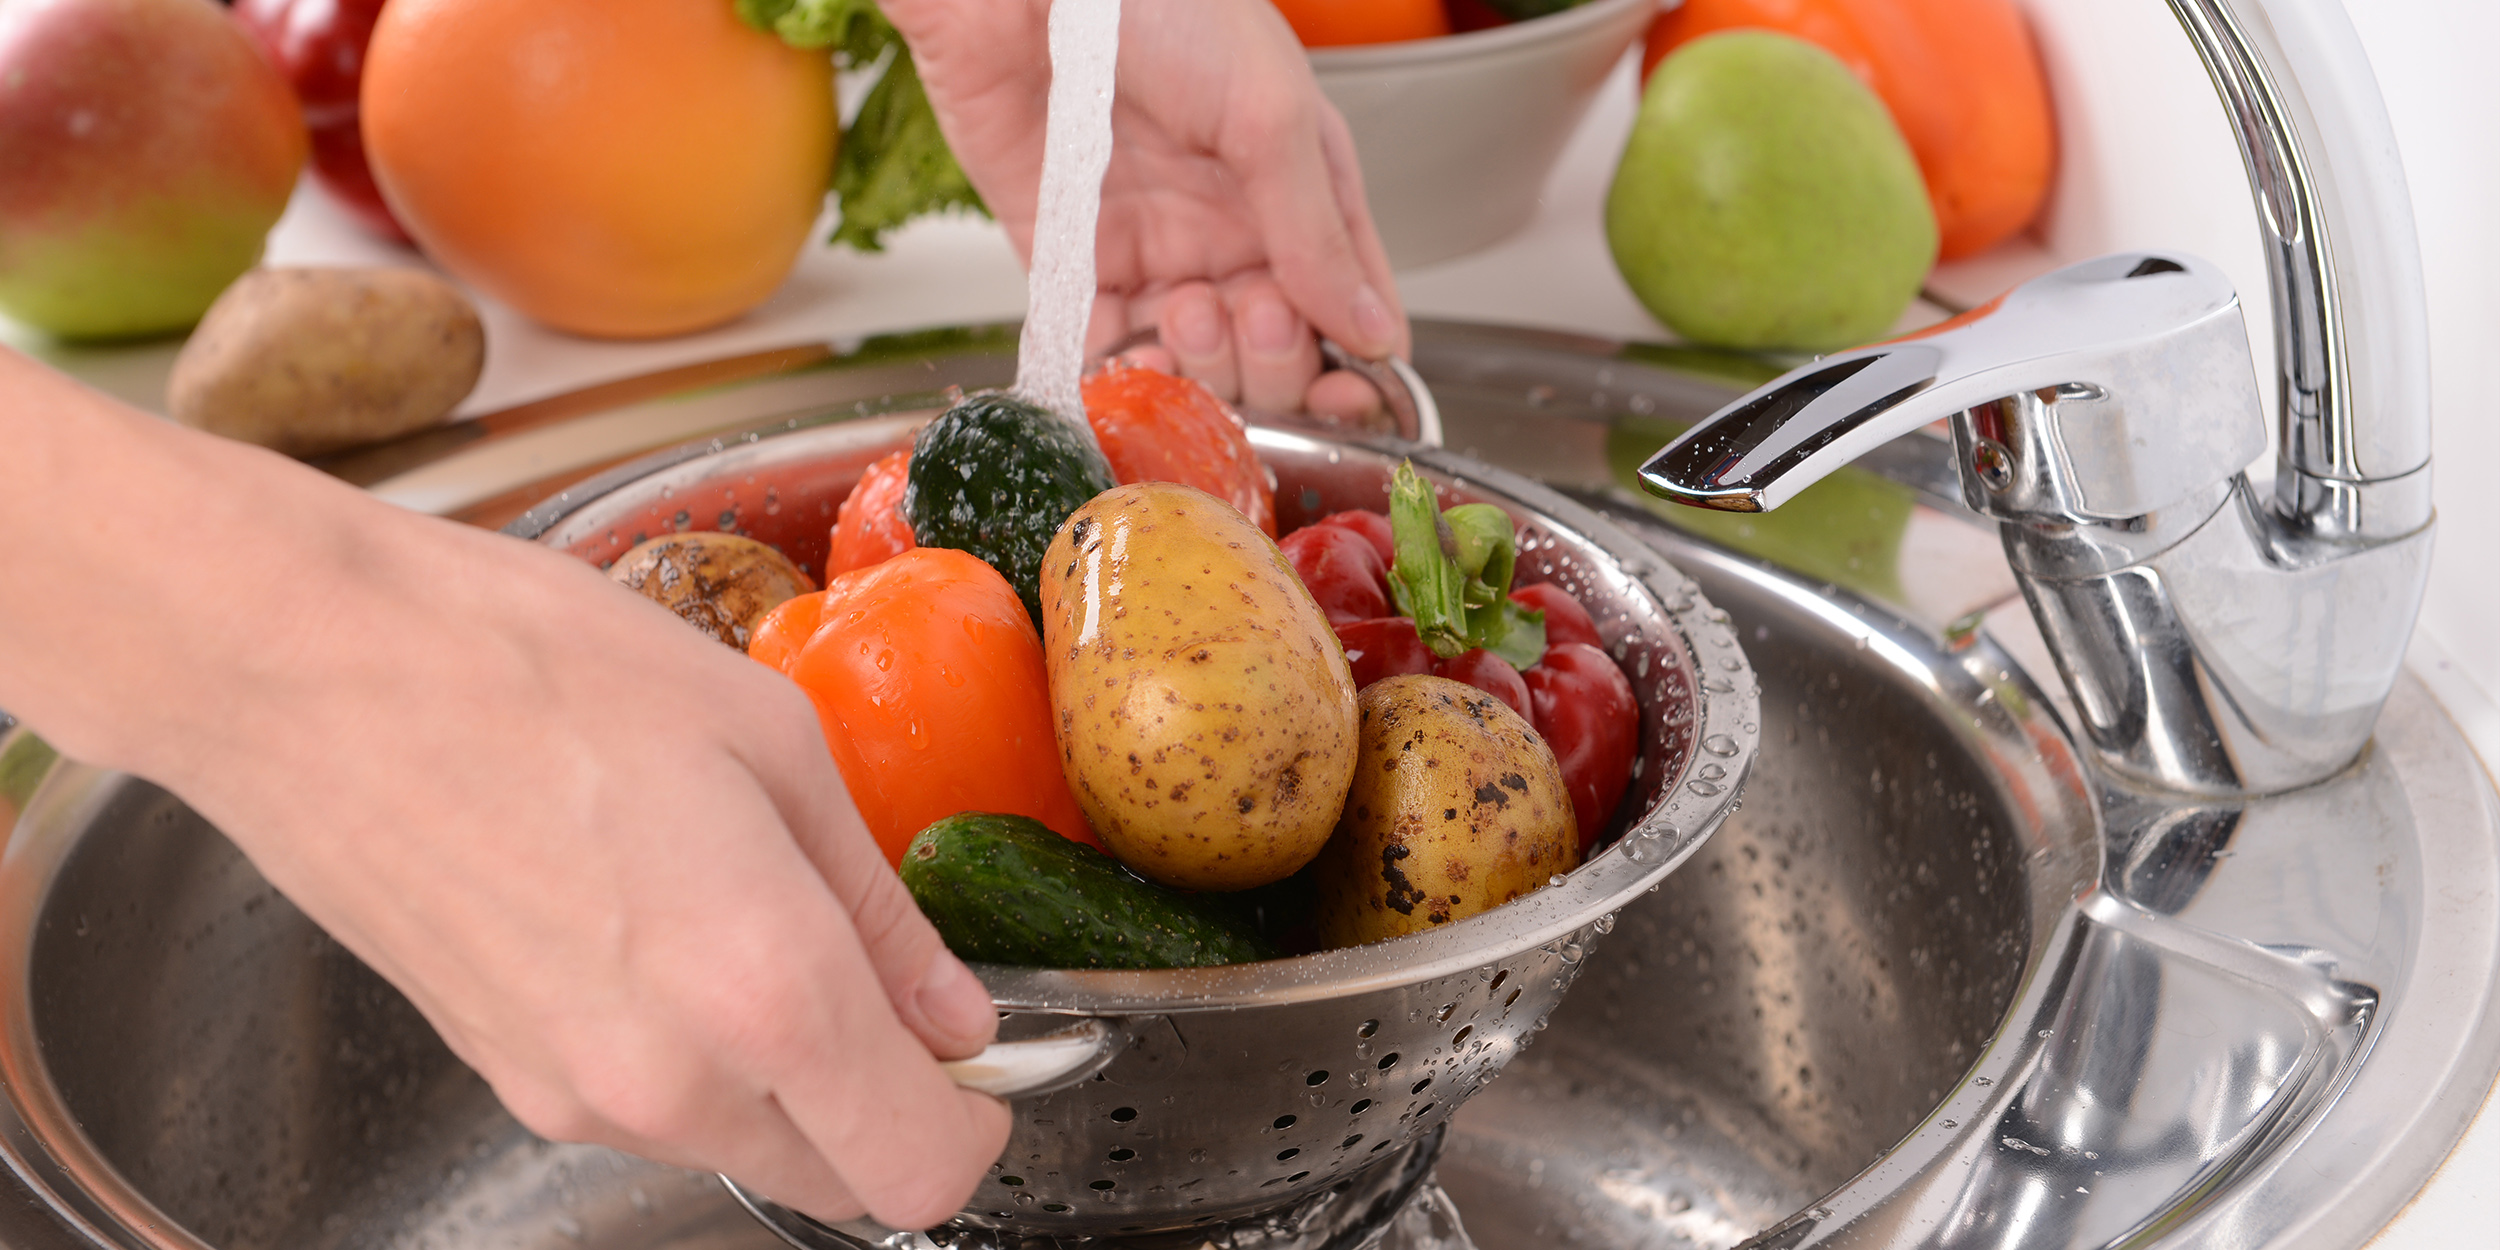 Мытье фруктов и овощей перед употреблением